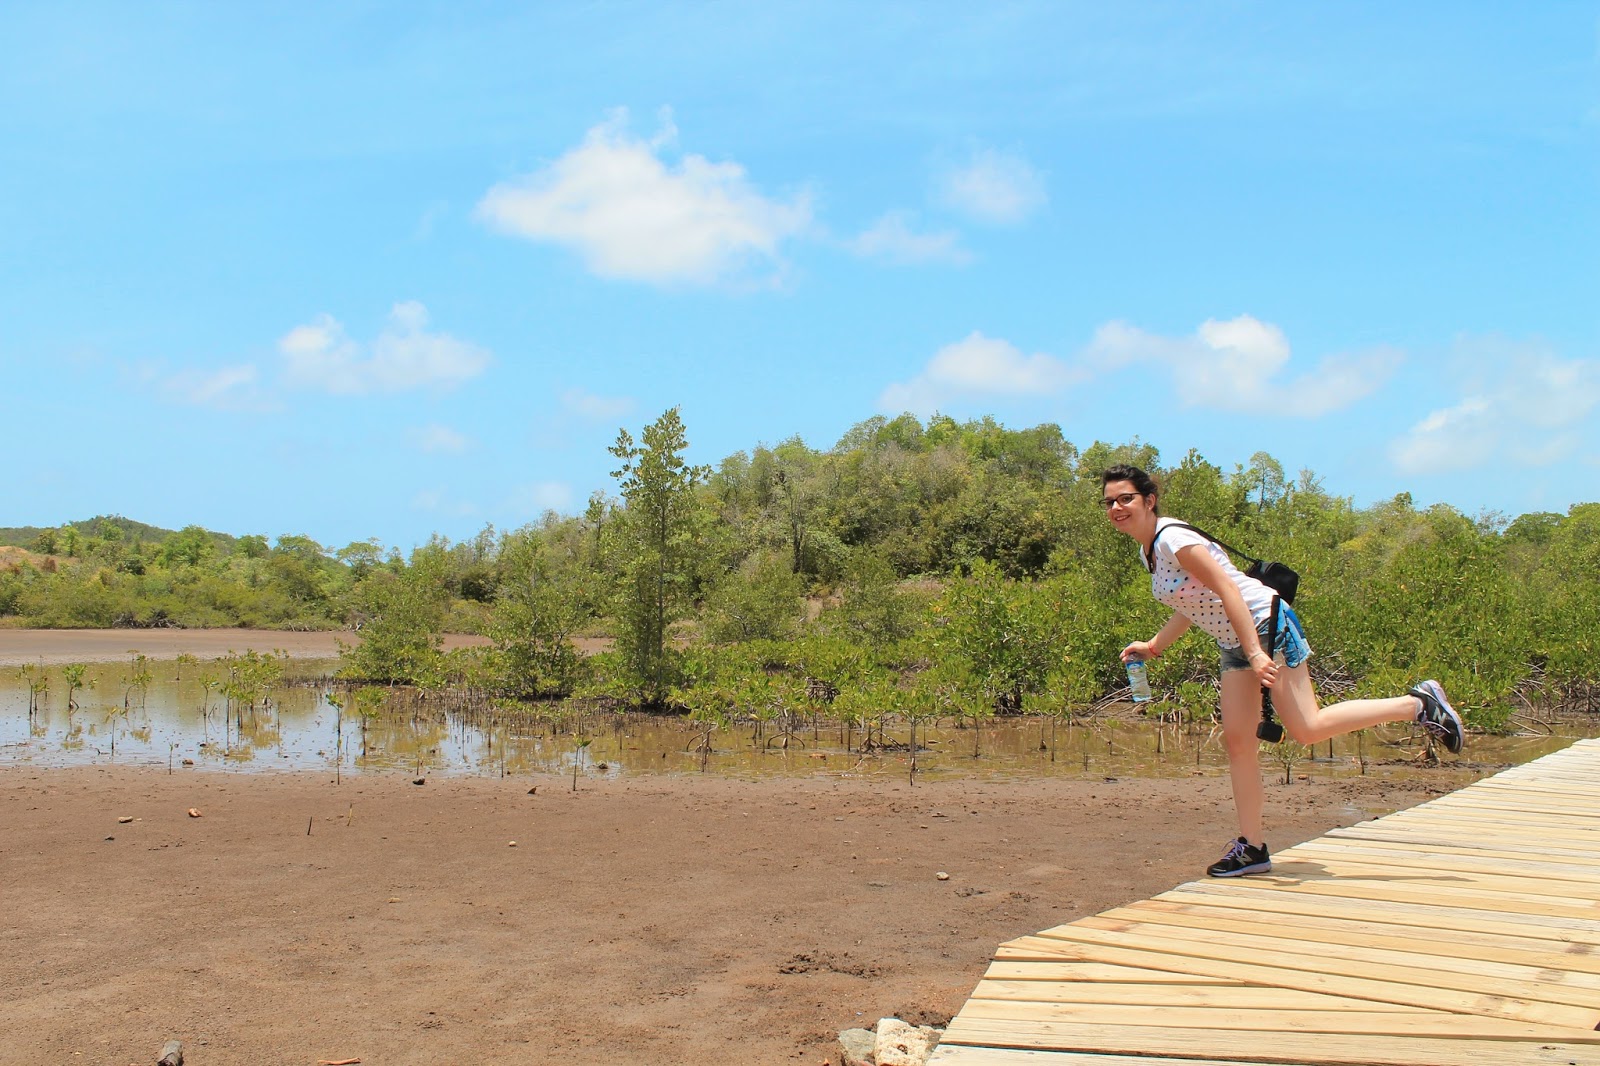 martinique île presqu'île caravelle chateau dubuc soleil vacances 972 mangrove randonnée